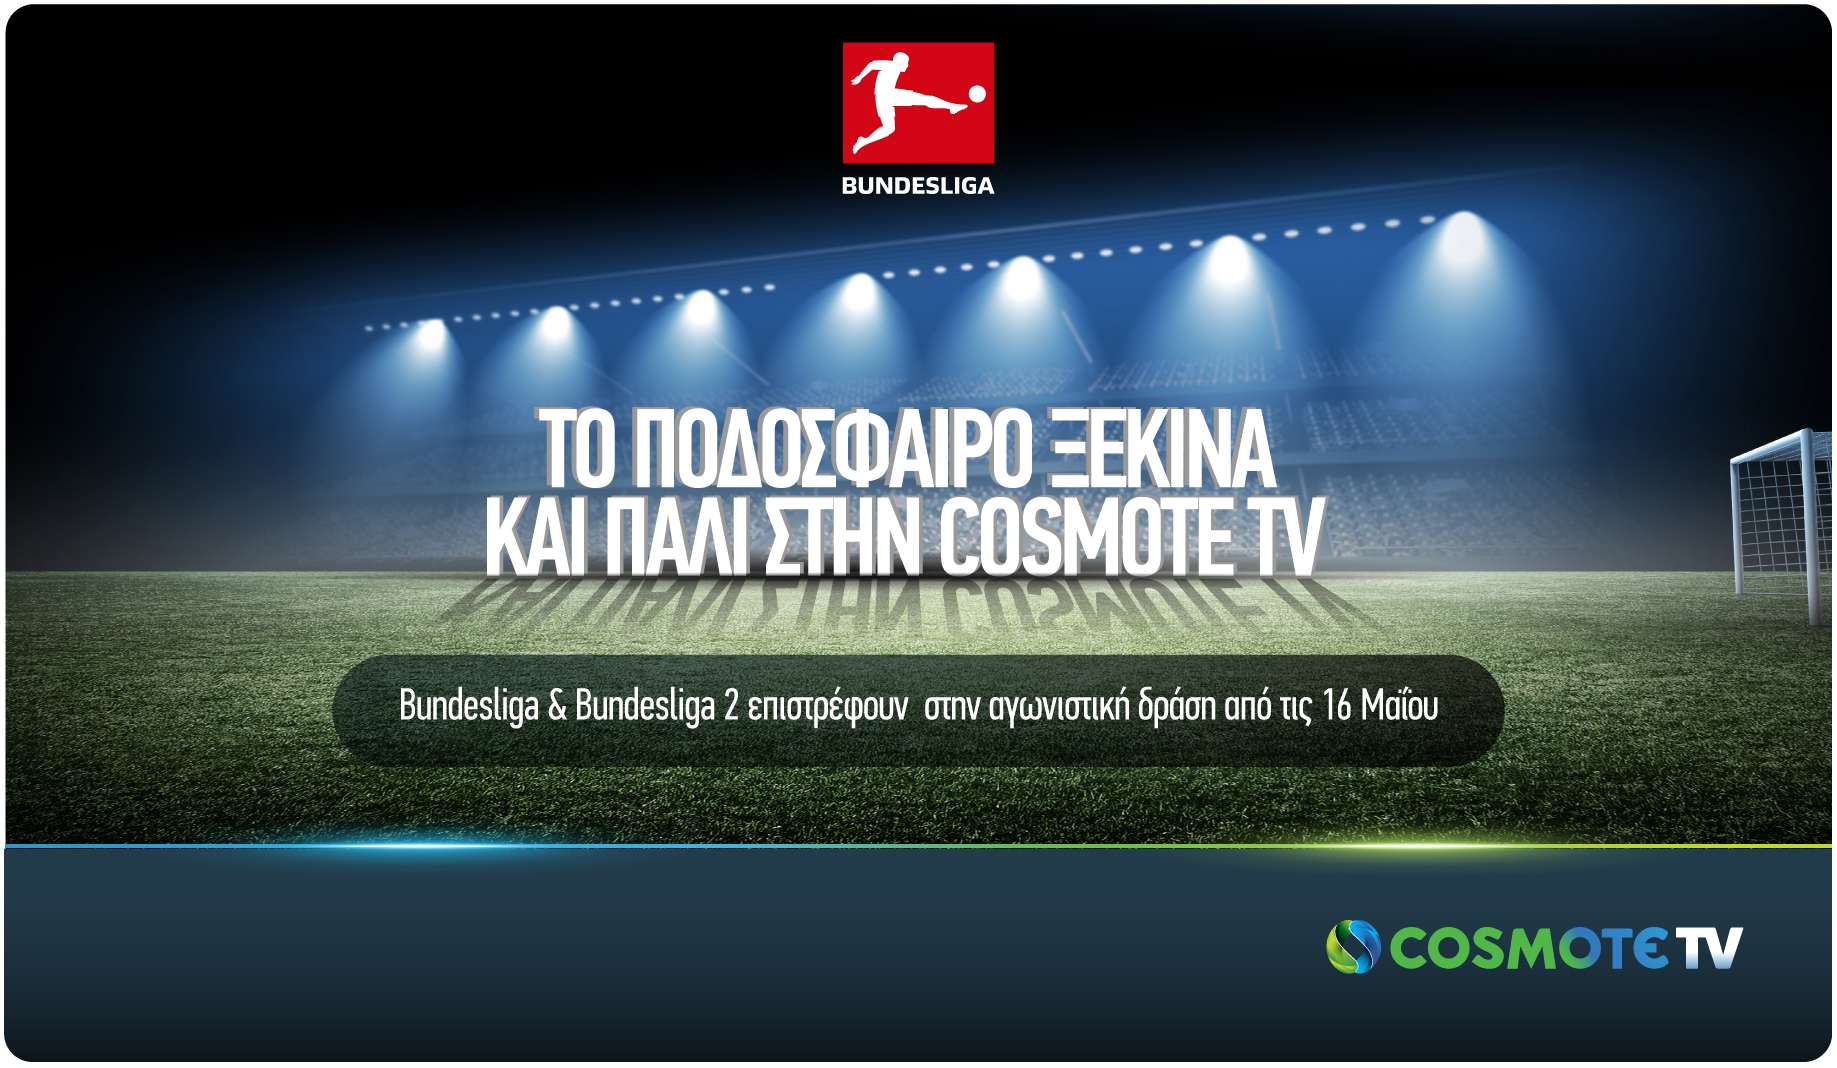 Το ποδόσφαιρο ξεκινά και πάλι στην COSMOTE TV